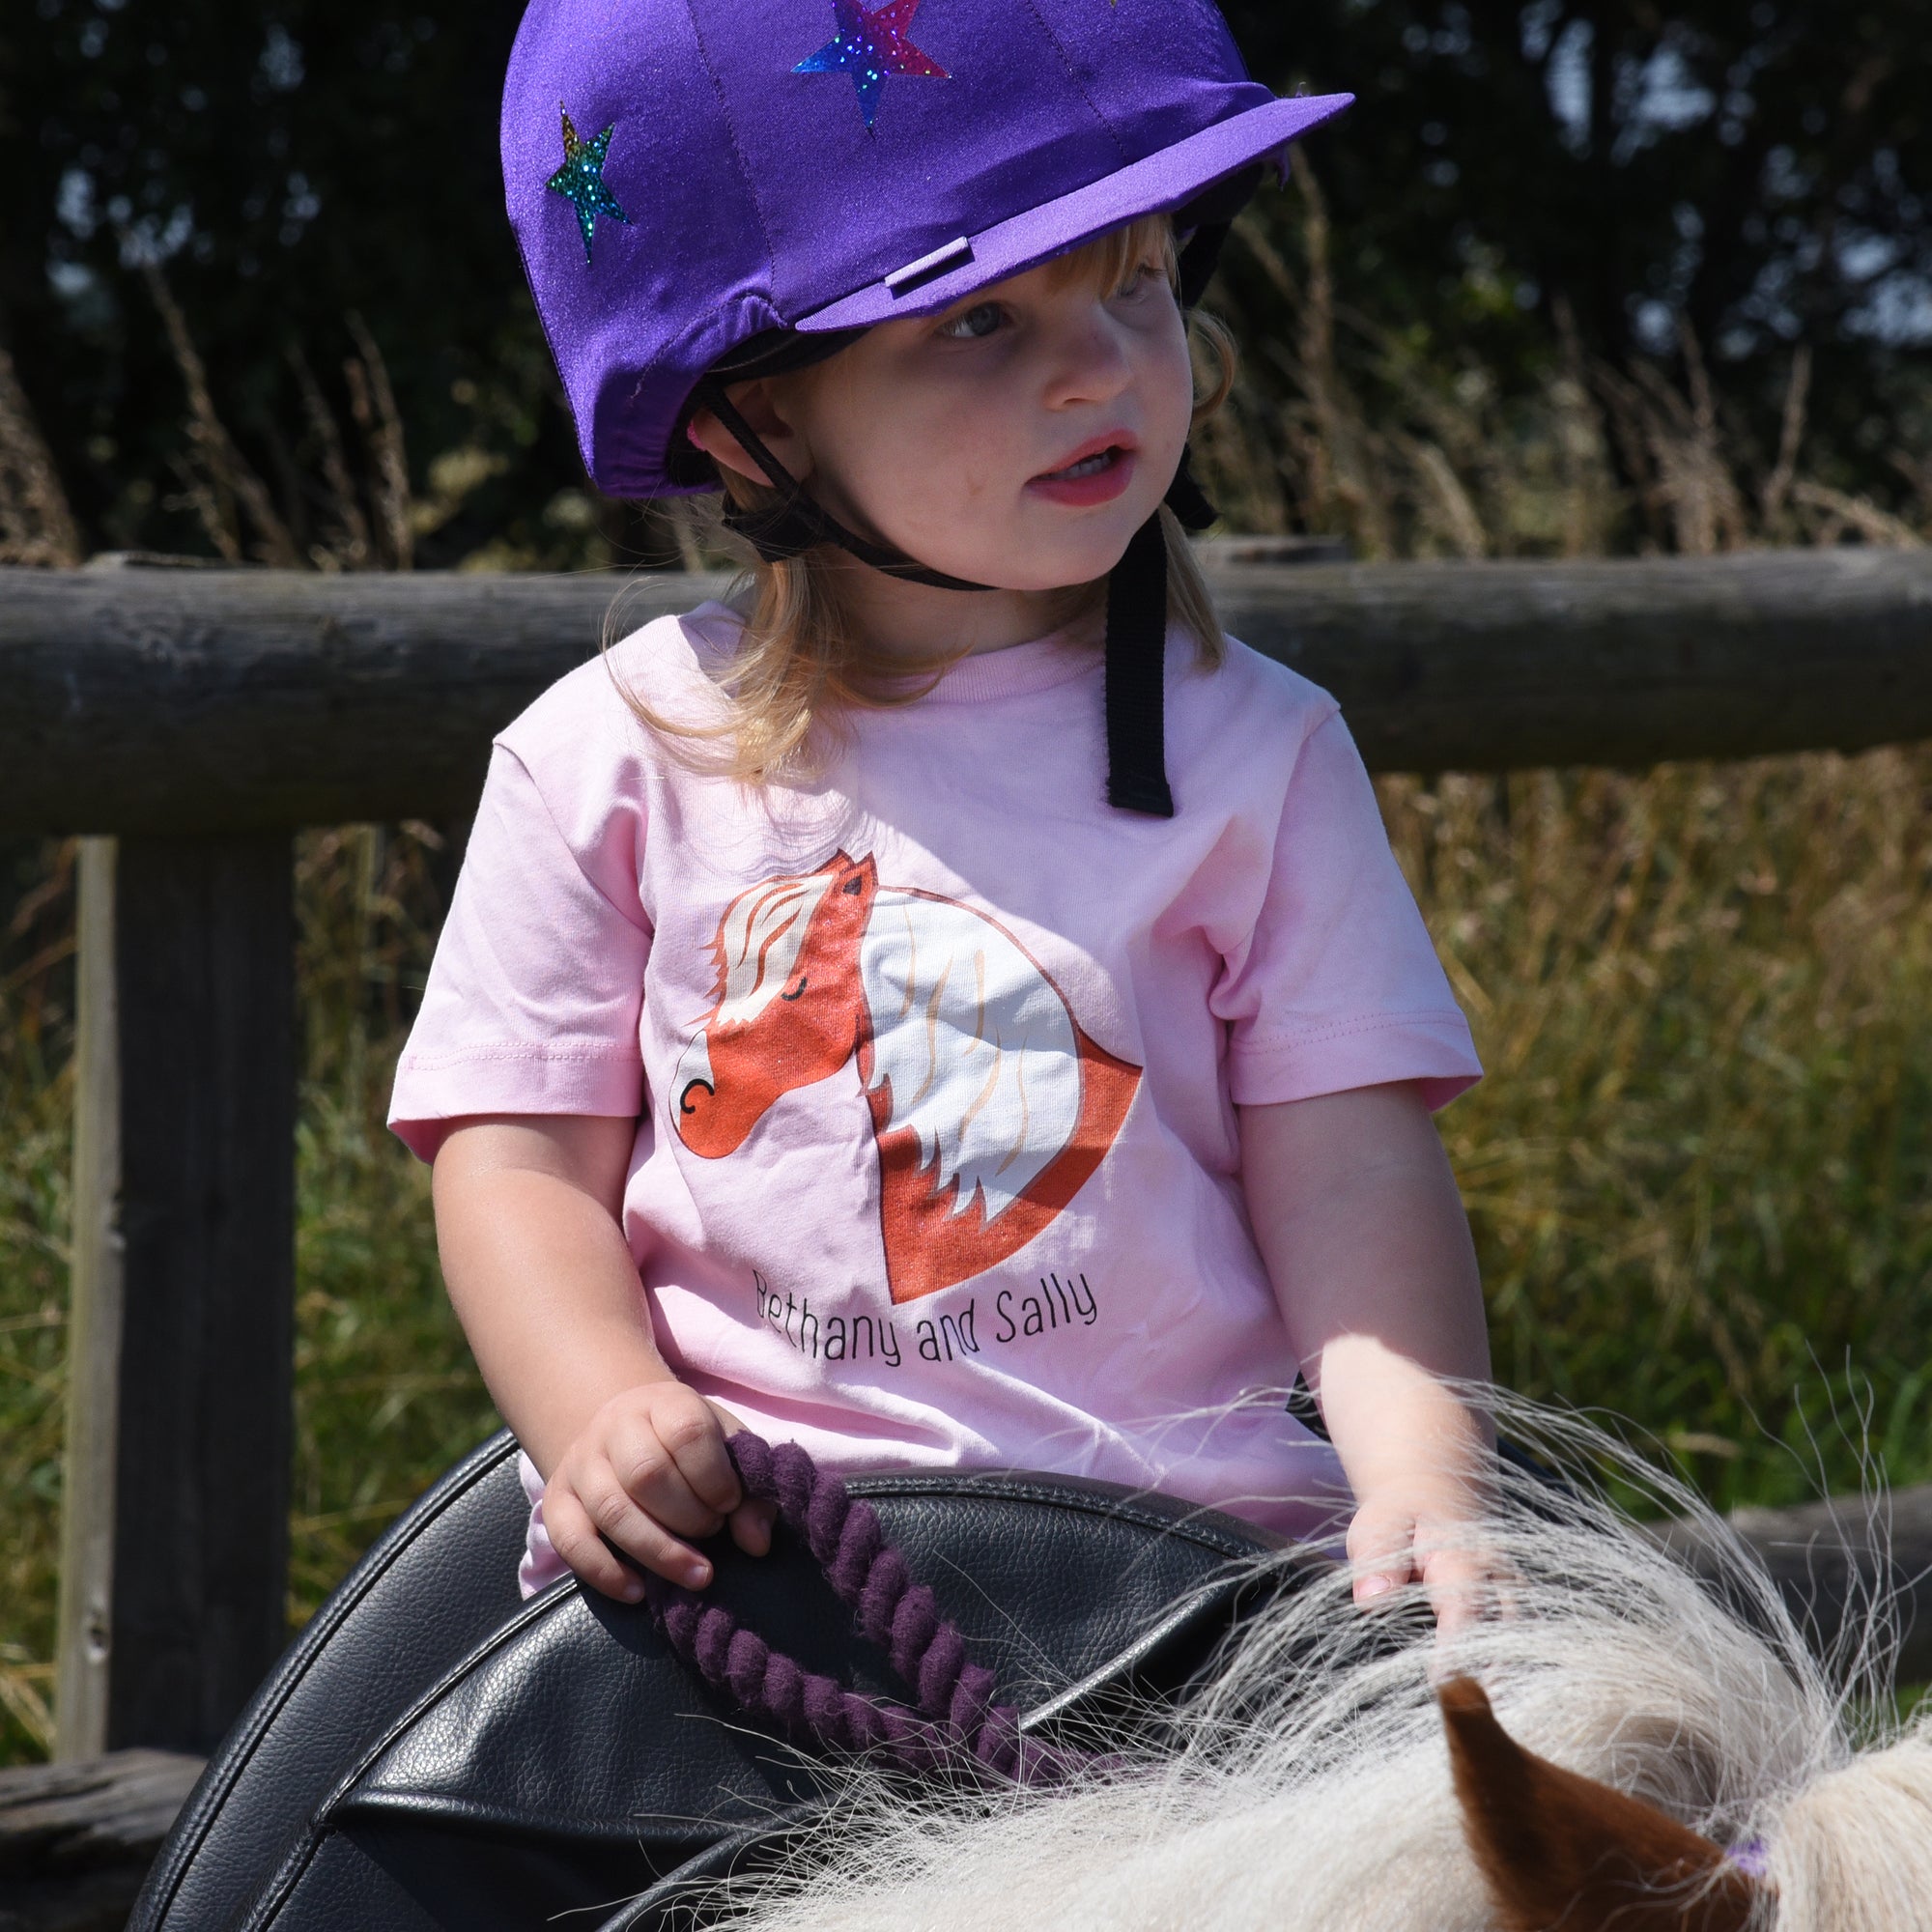 Child's Pony and Rider T-shirt